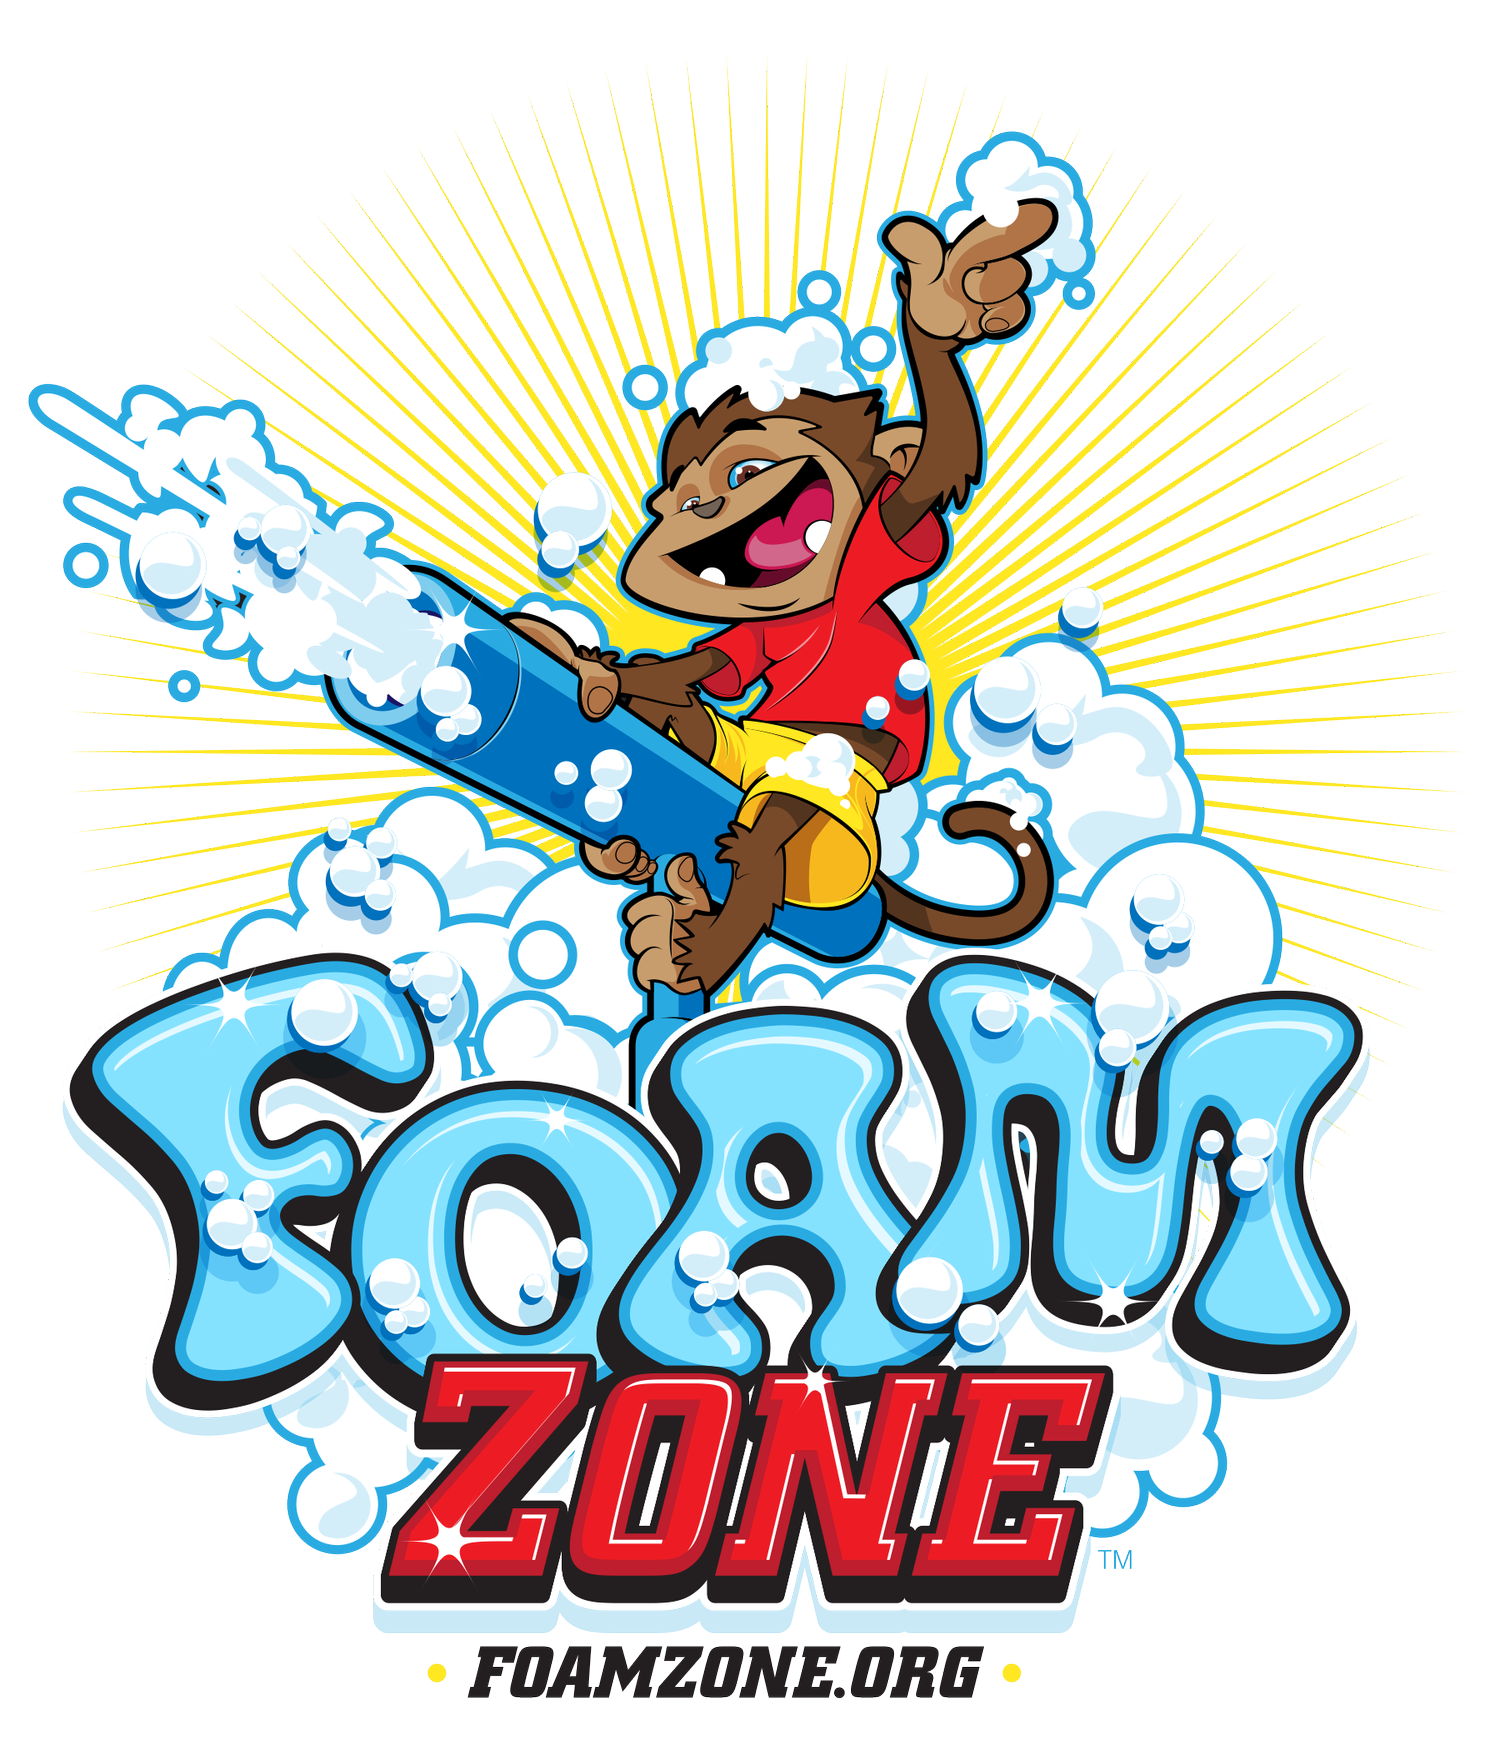 Foam Zone Logo